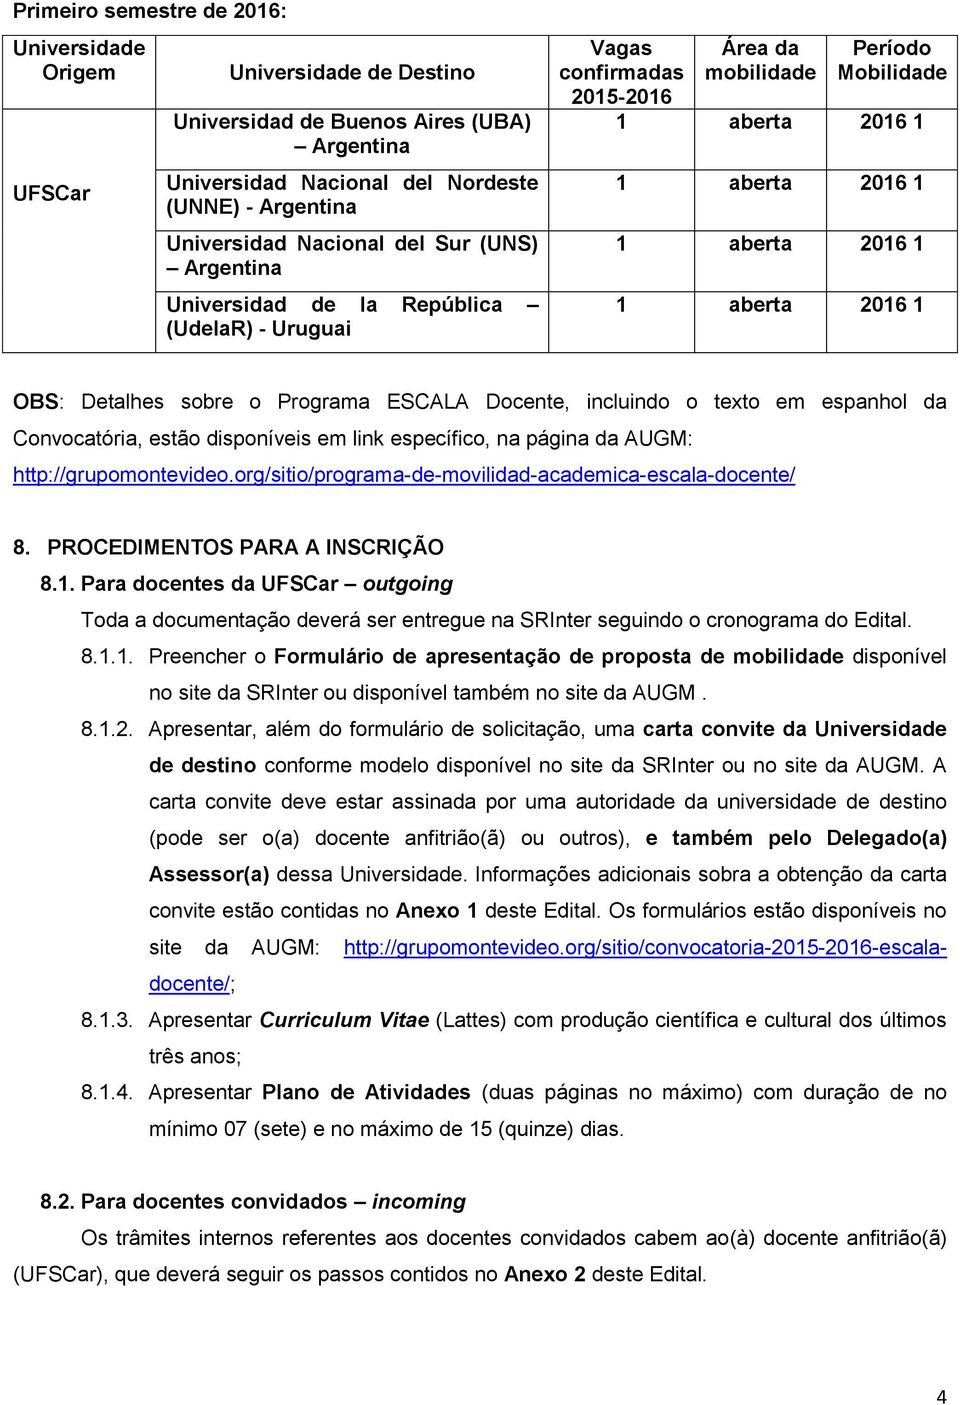 em espanhol da Convocatória, estão disponíveis em link específico, na página da AUGM: http://grupomontevideo.org/sitio/programa-de-movilidad-academica-escala-docente/ 8.